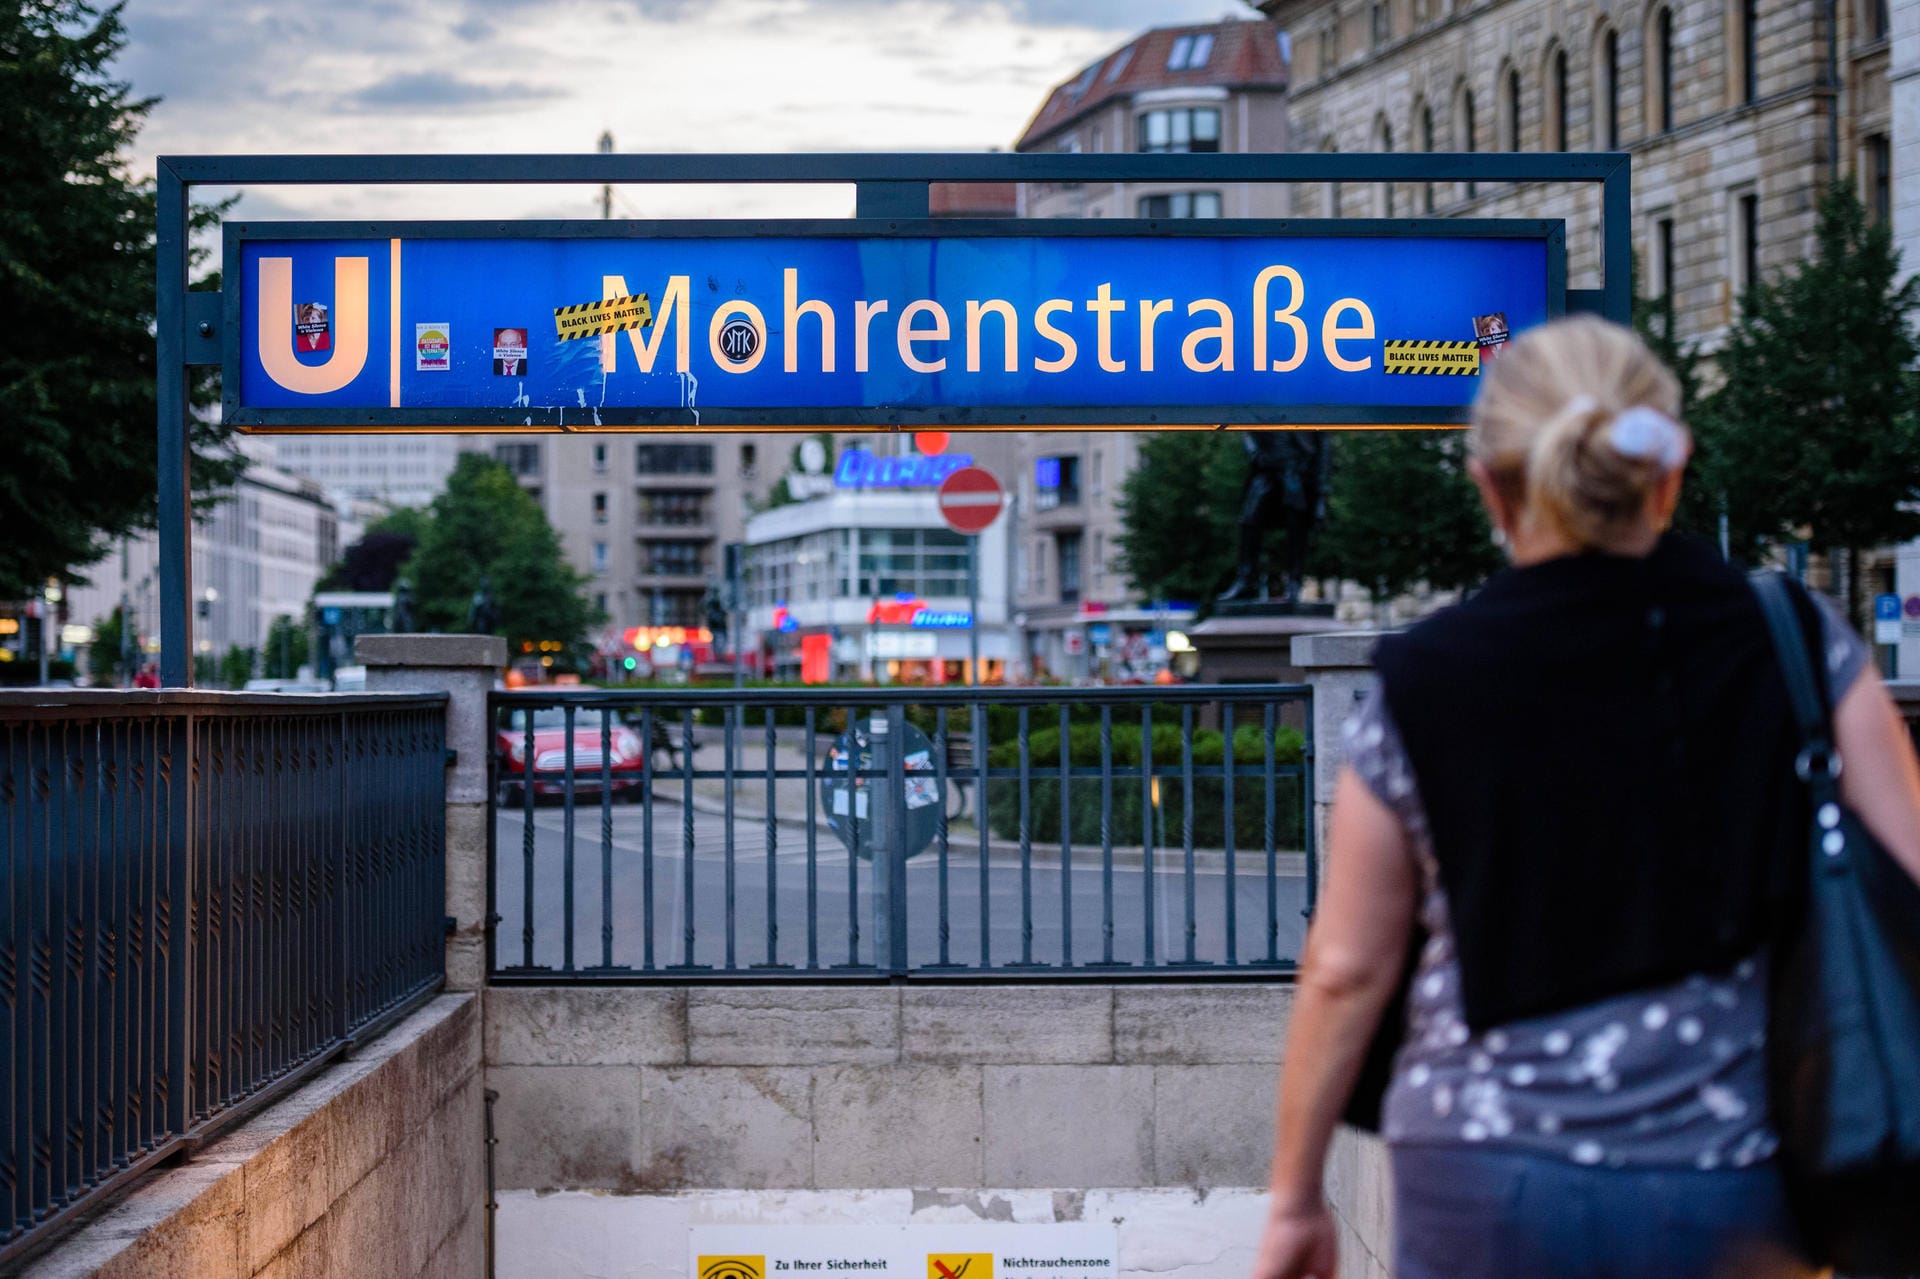 Eine Frau betritt die Berliner U-Bahn-Station "Mohrenstraße": Um die Benennung der Haltestelle und der gleichnamigen Straße gibt es schon länger Streit. Im Zuge der jüngsten Anti-Rassismus-Proteste weltweit, will der Betreiber die Station umbenennen.